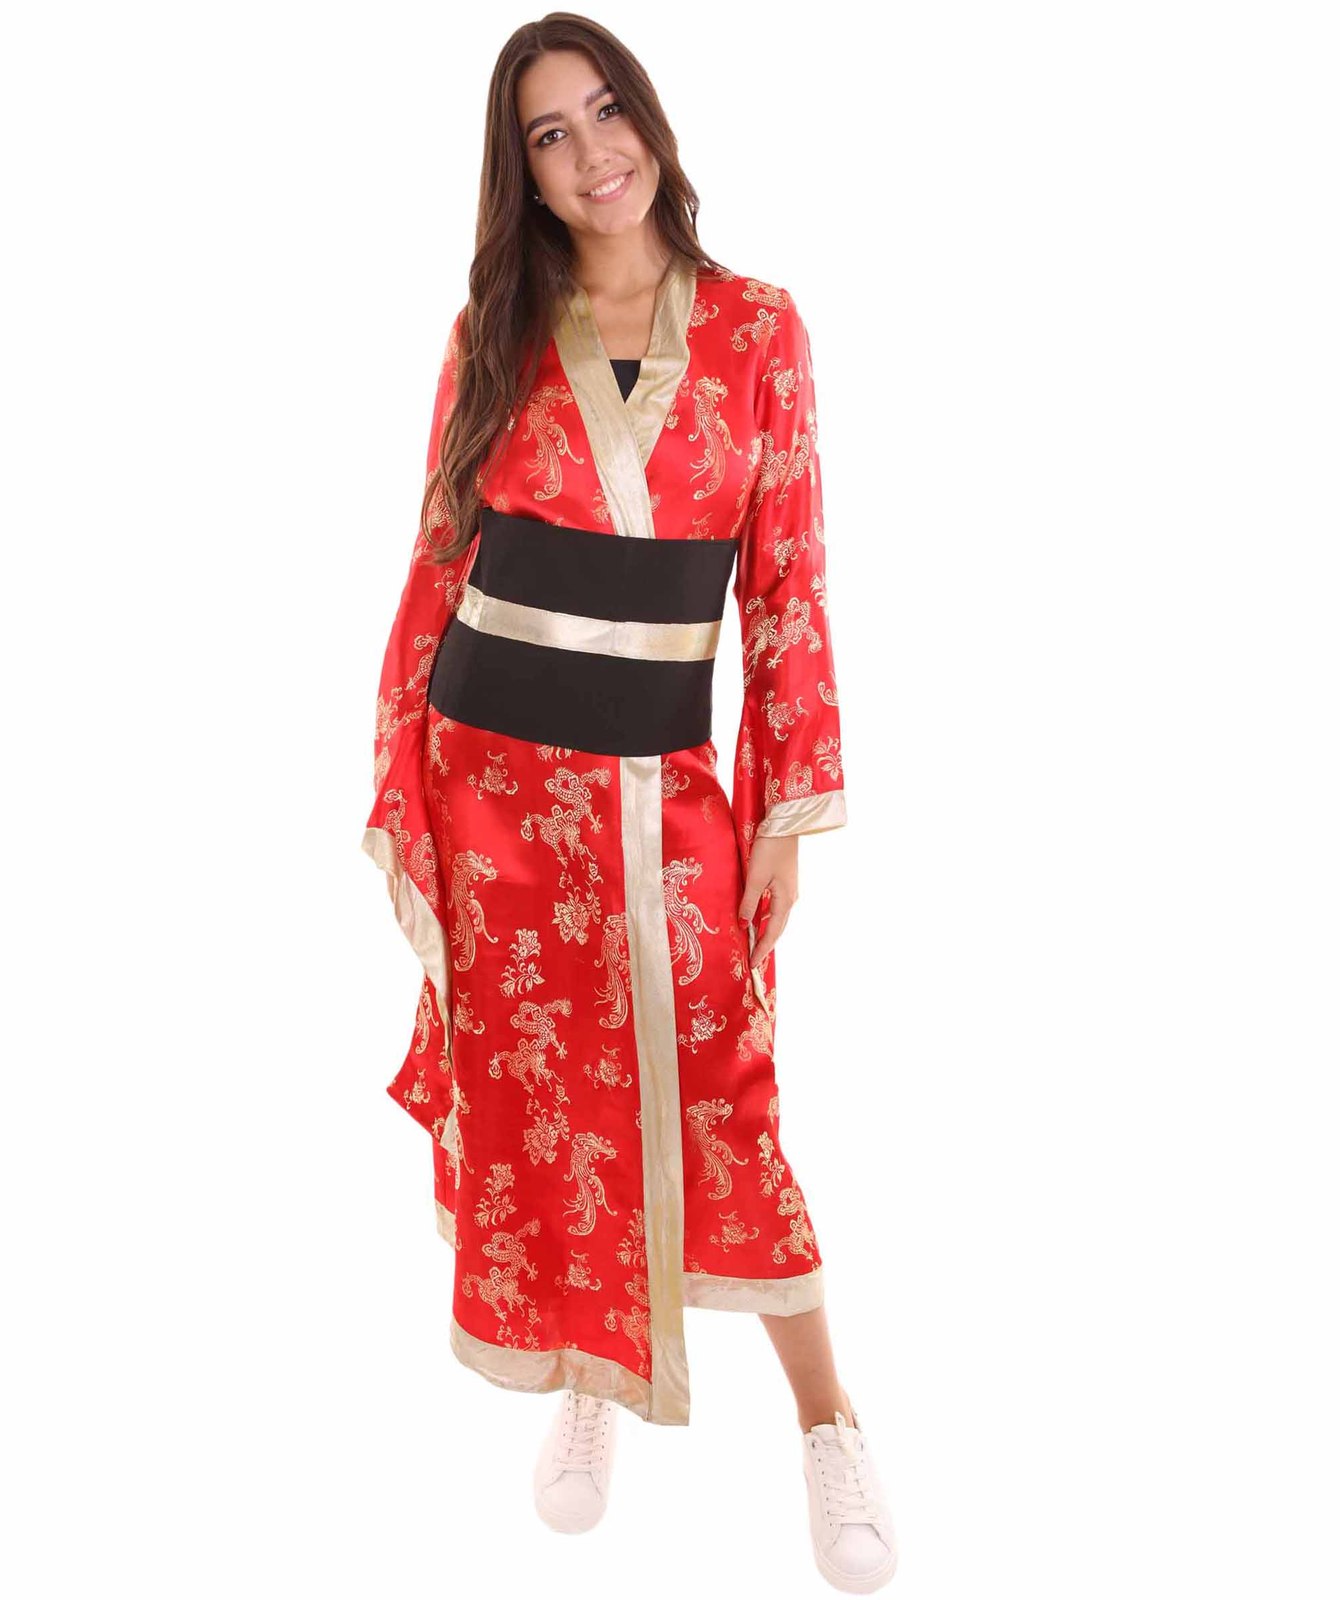 Adult Women's Geisha Costume HC-081 - $96.85